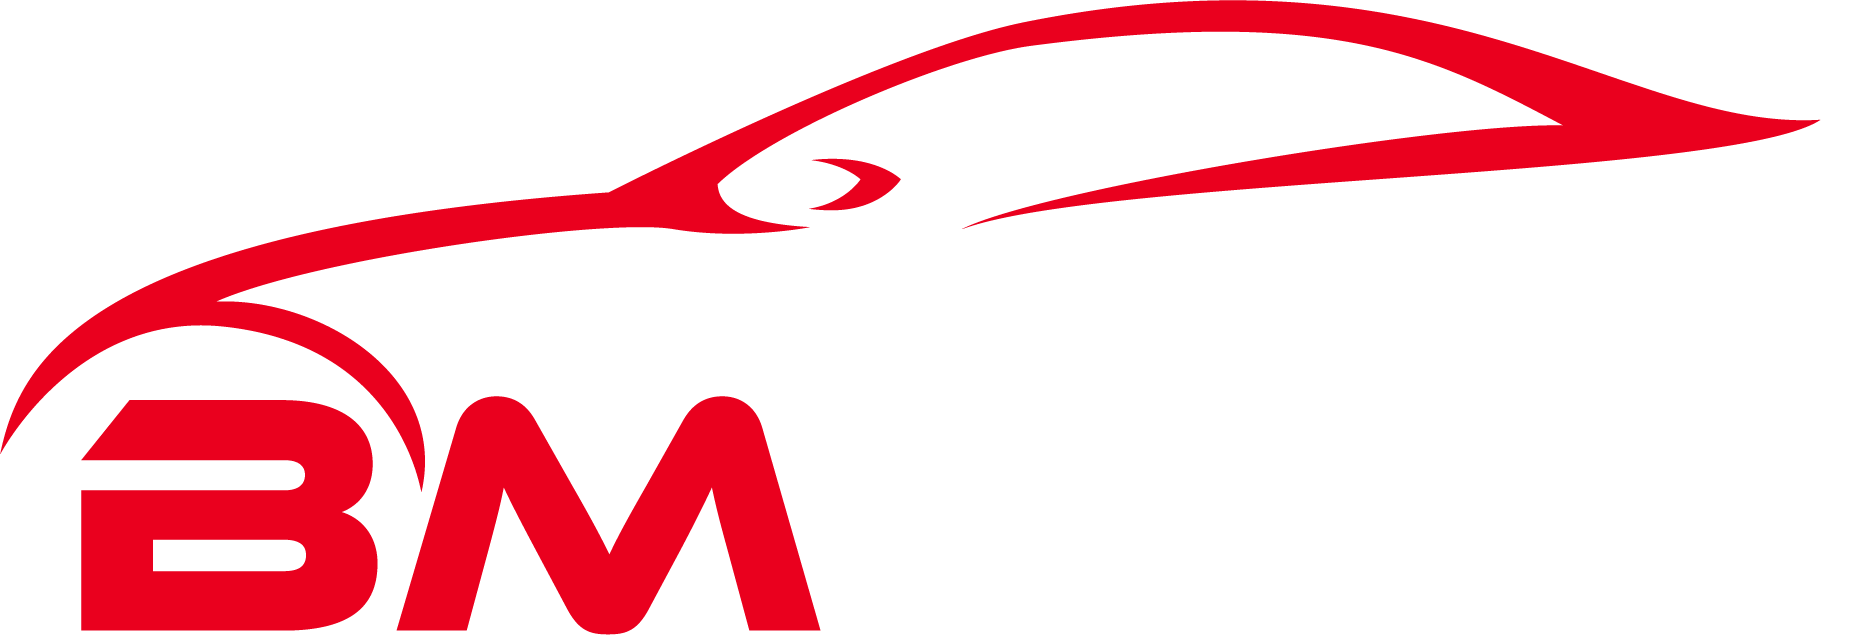 BMTaxi Logo